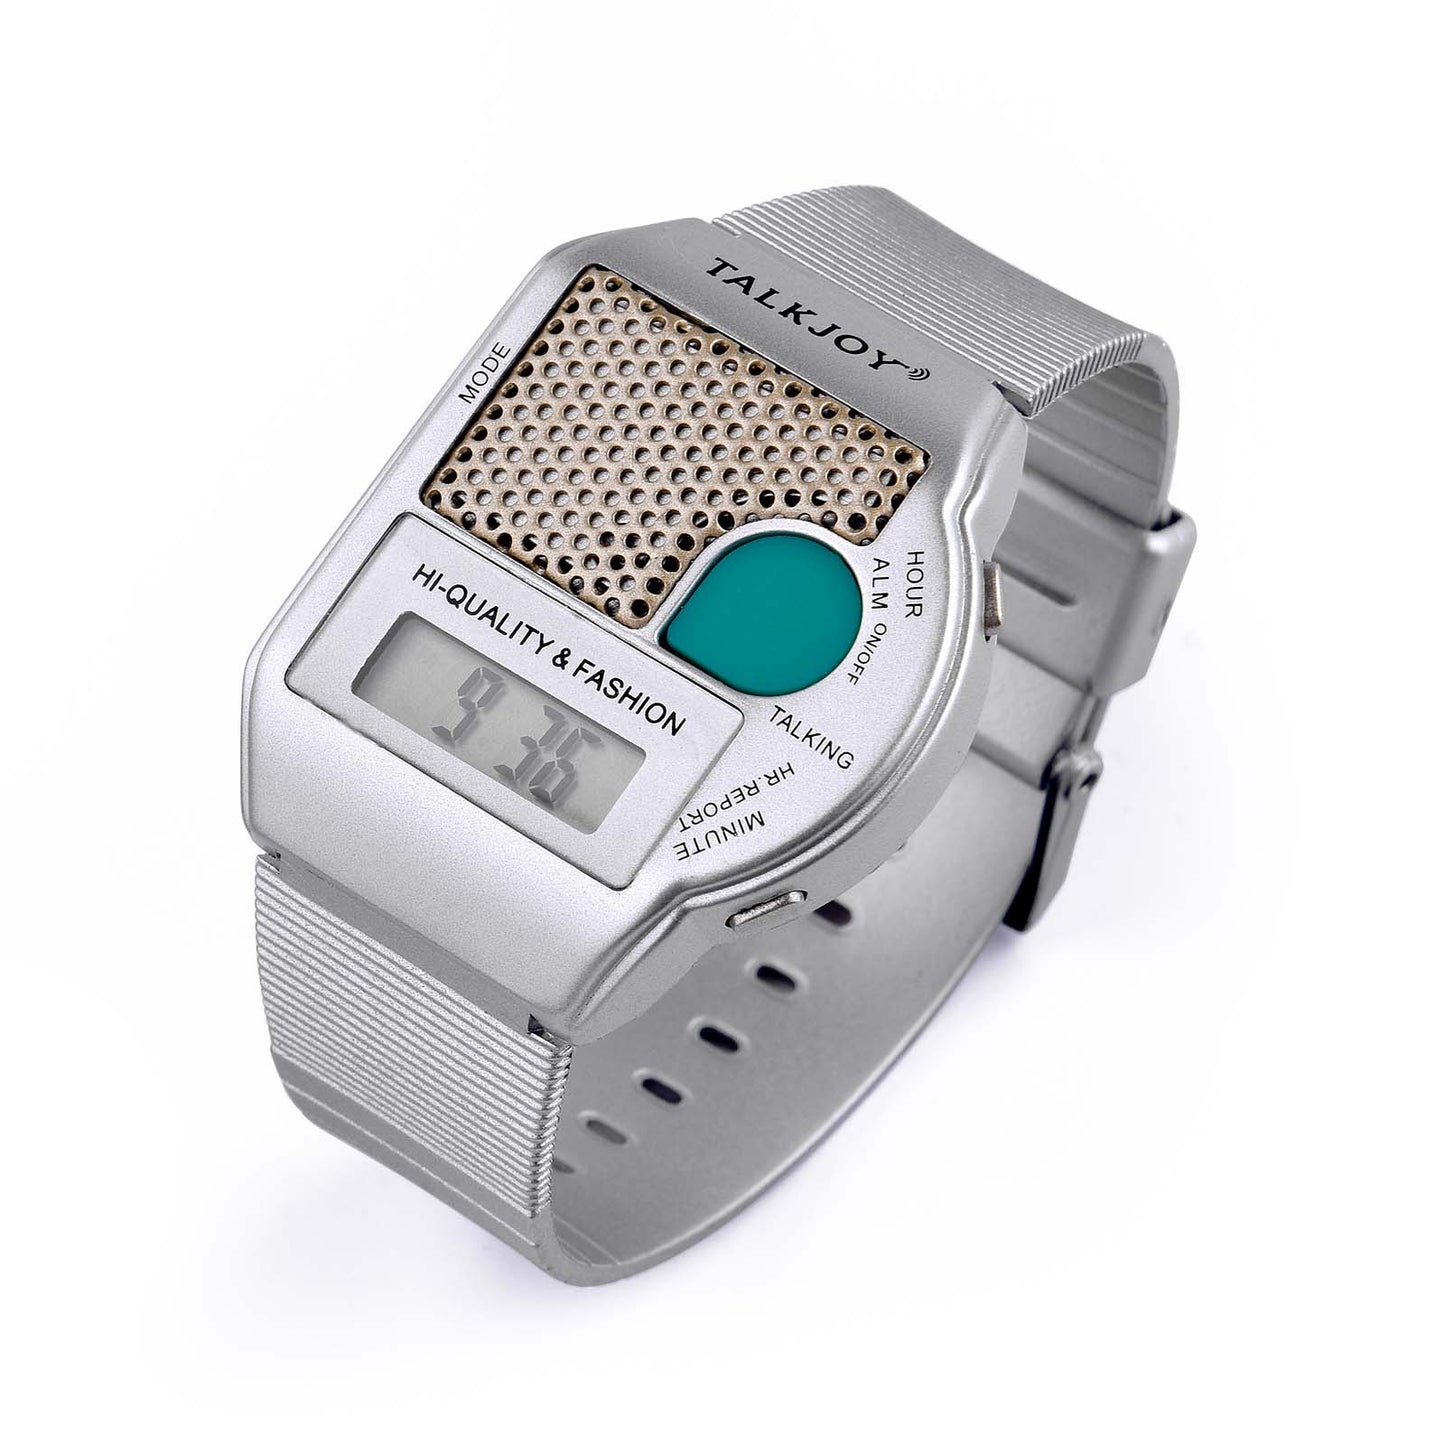 Sprechende Armbanduhr Big Button Blindenuhr Wecker Senioren Uhr Ansage Uhrzeit Sprachausgabe